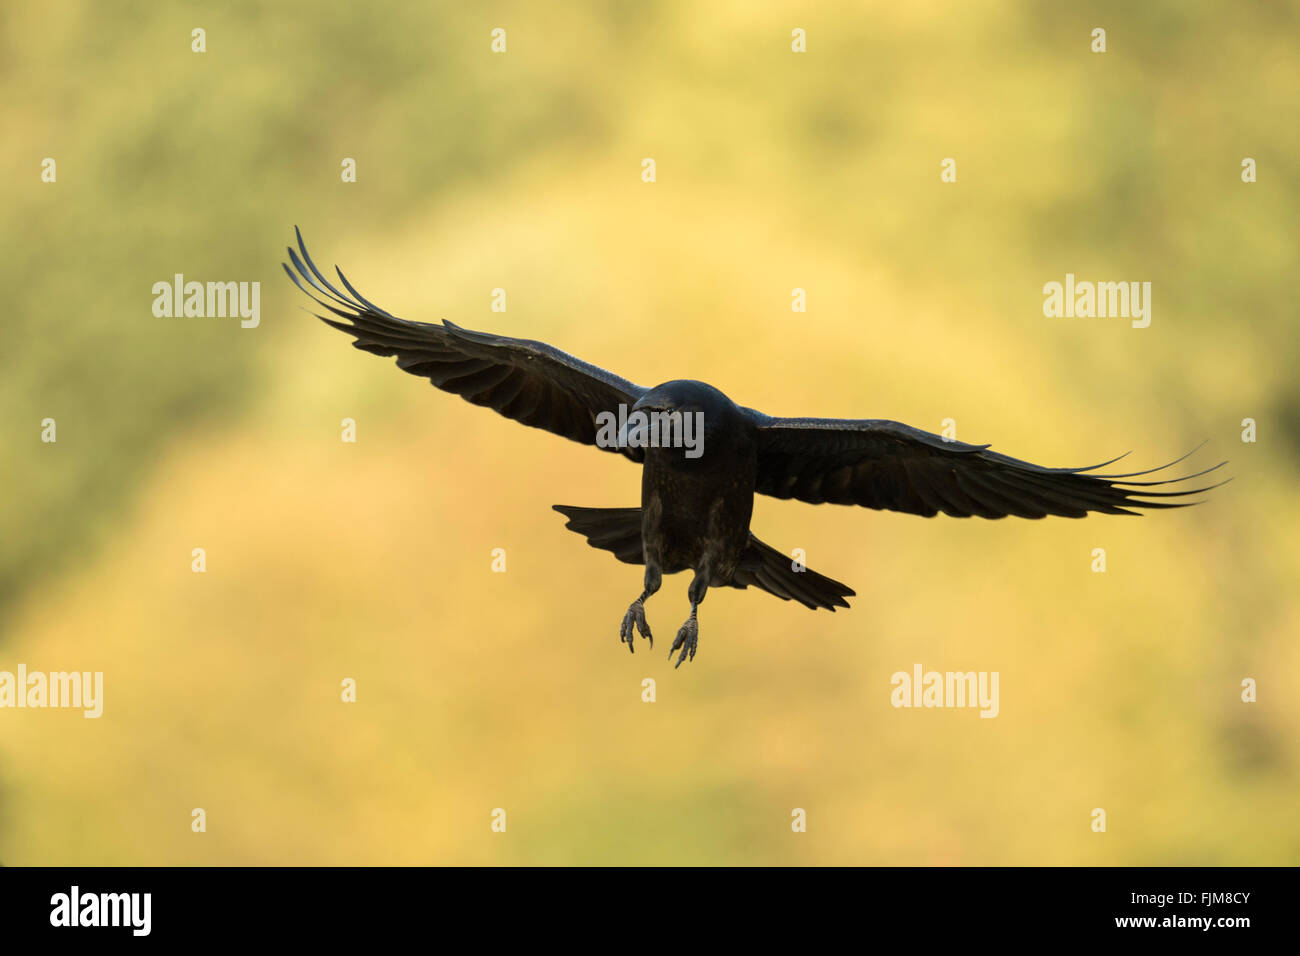 Grand Corbeau Corvus corax / Kolkrabe ( ) en vol, en face de couleur jaune, feuilles d'automne, regardant avec attention. Banque D'Images